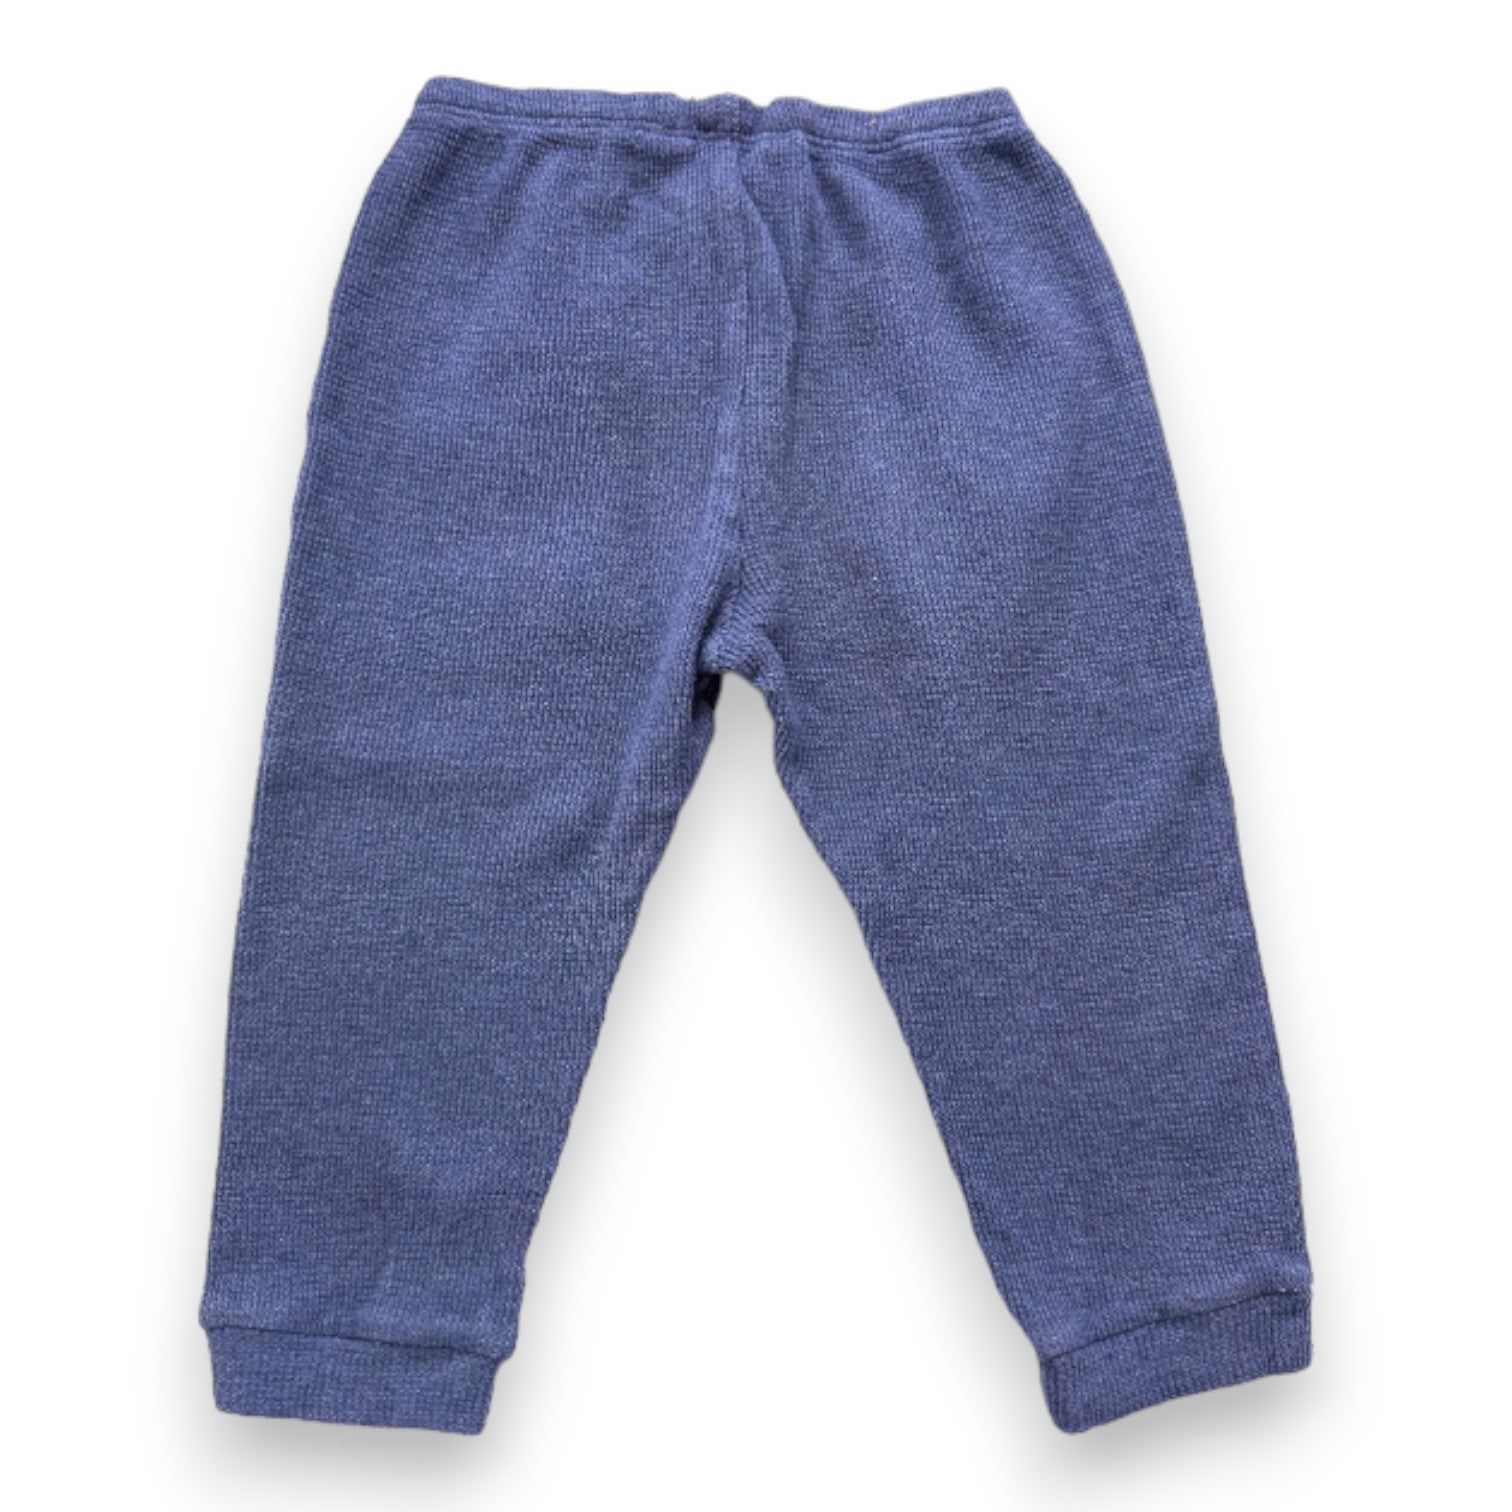 RALPH LAUREN - Pantalon bleu léger - 2 ans